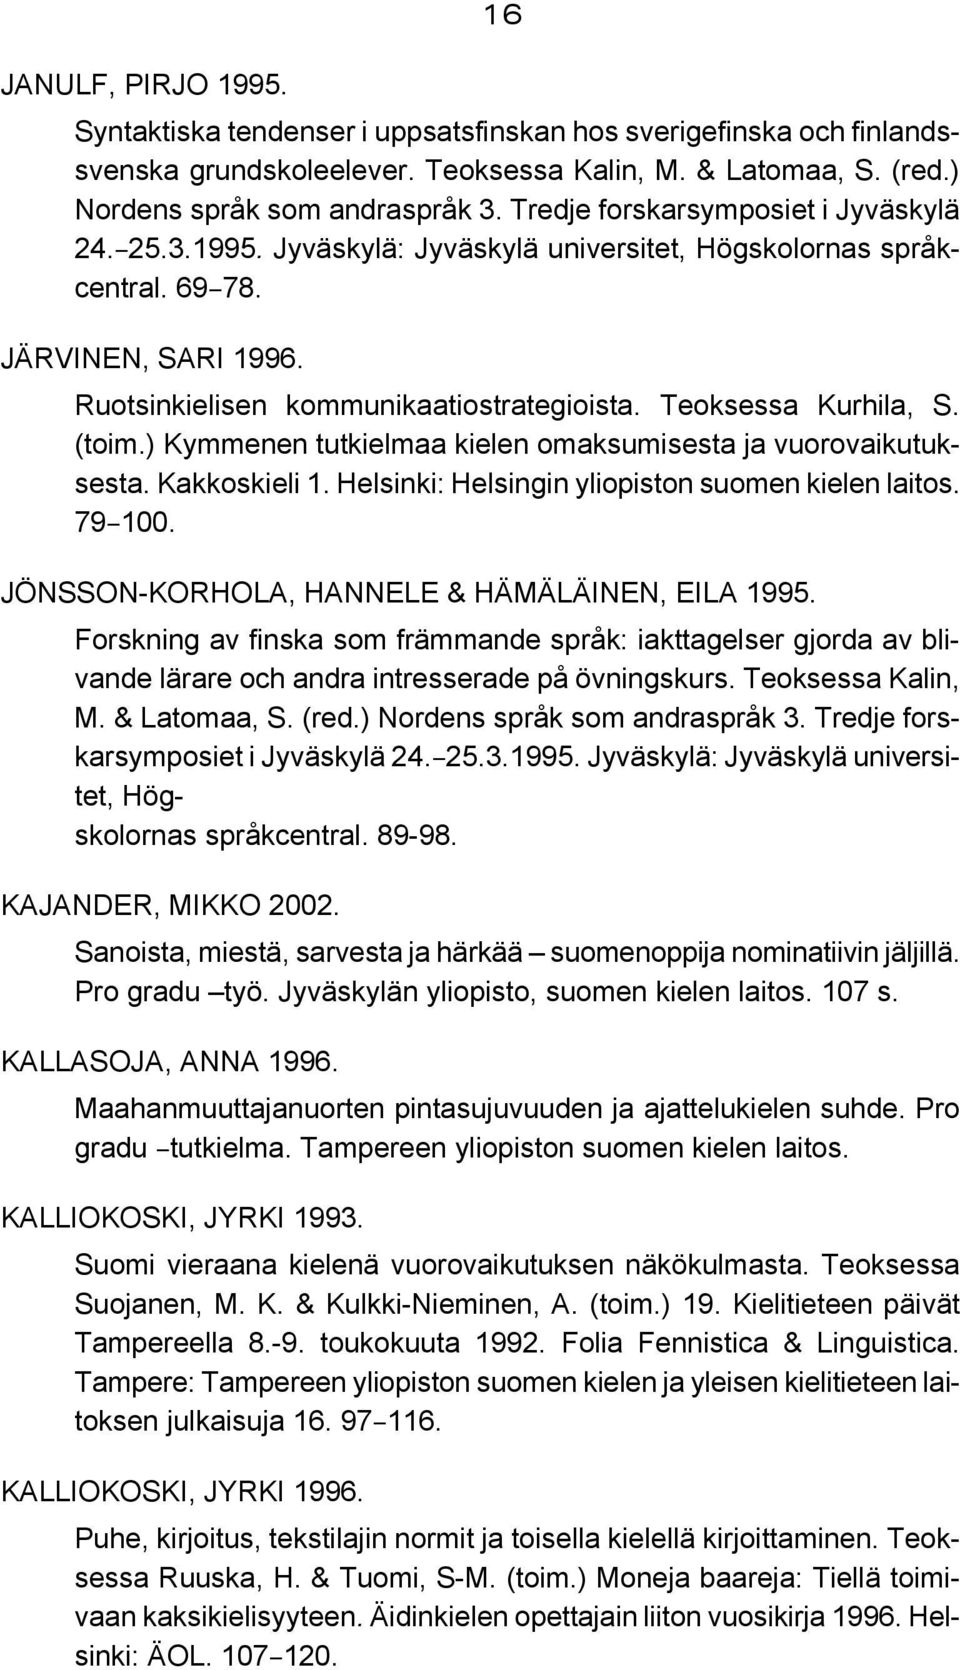 Teoksessa Kurhila, S. (toim.) Kymmenen tutkielmaa kielen omaksumisesta ja vuorovaikutuksesta. Kakkoskieli 1. Helsinki: Helsingin yliopiston suomen kielen laitos. 79B100.